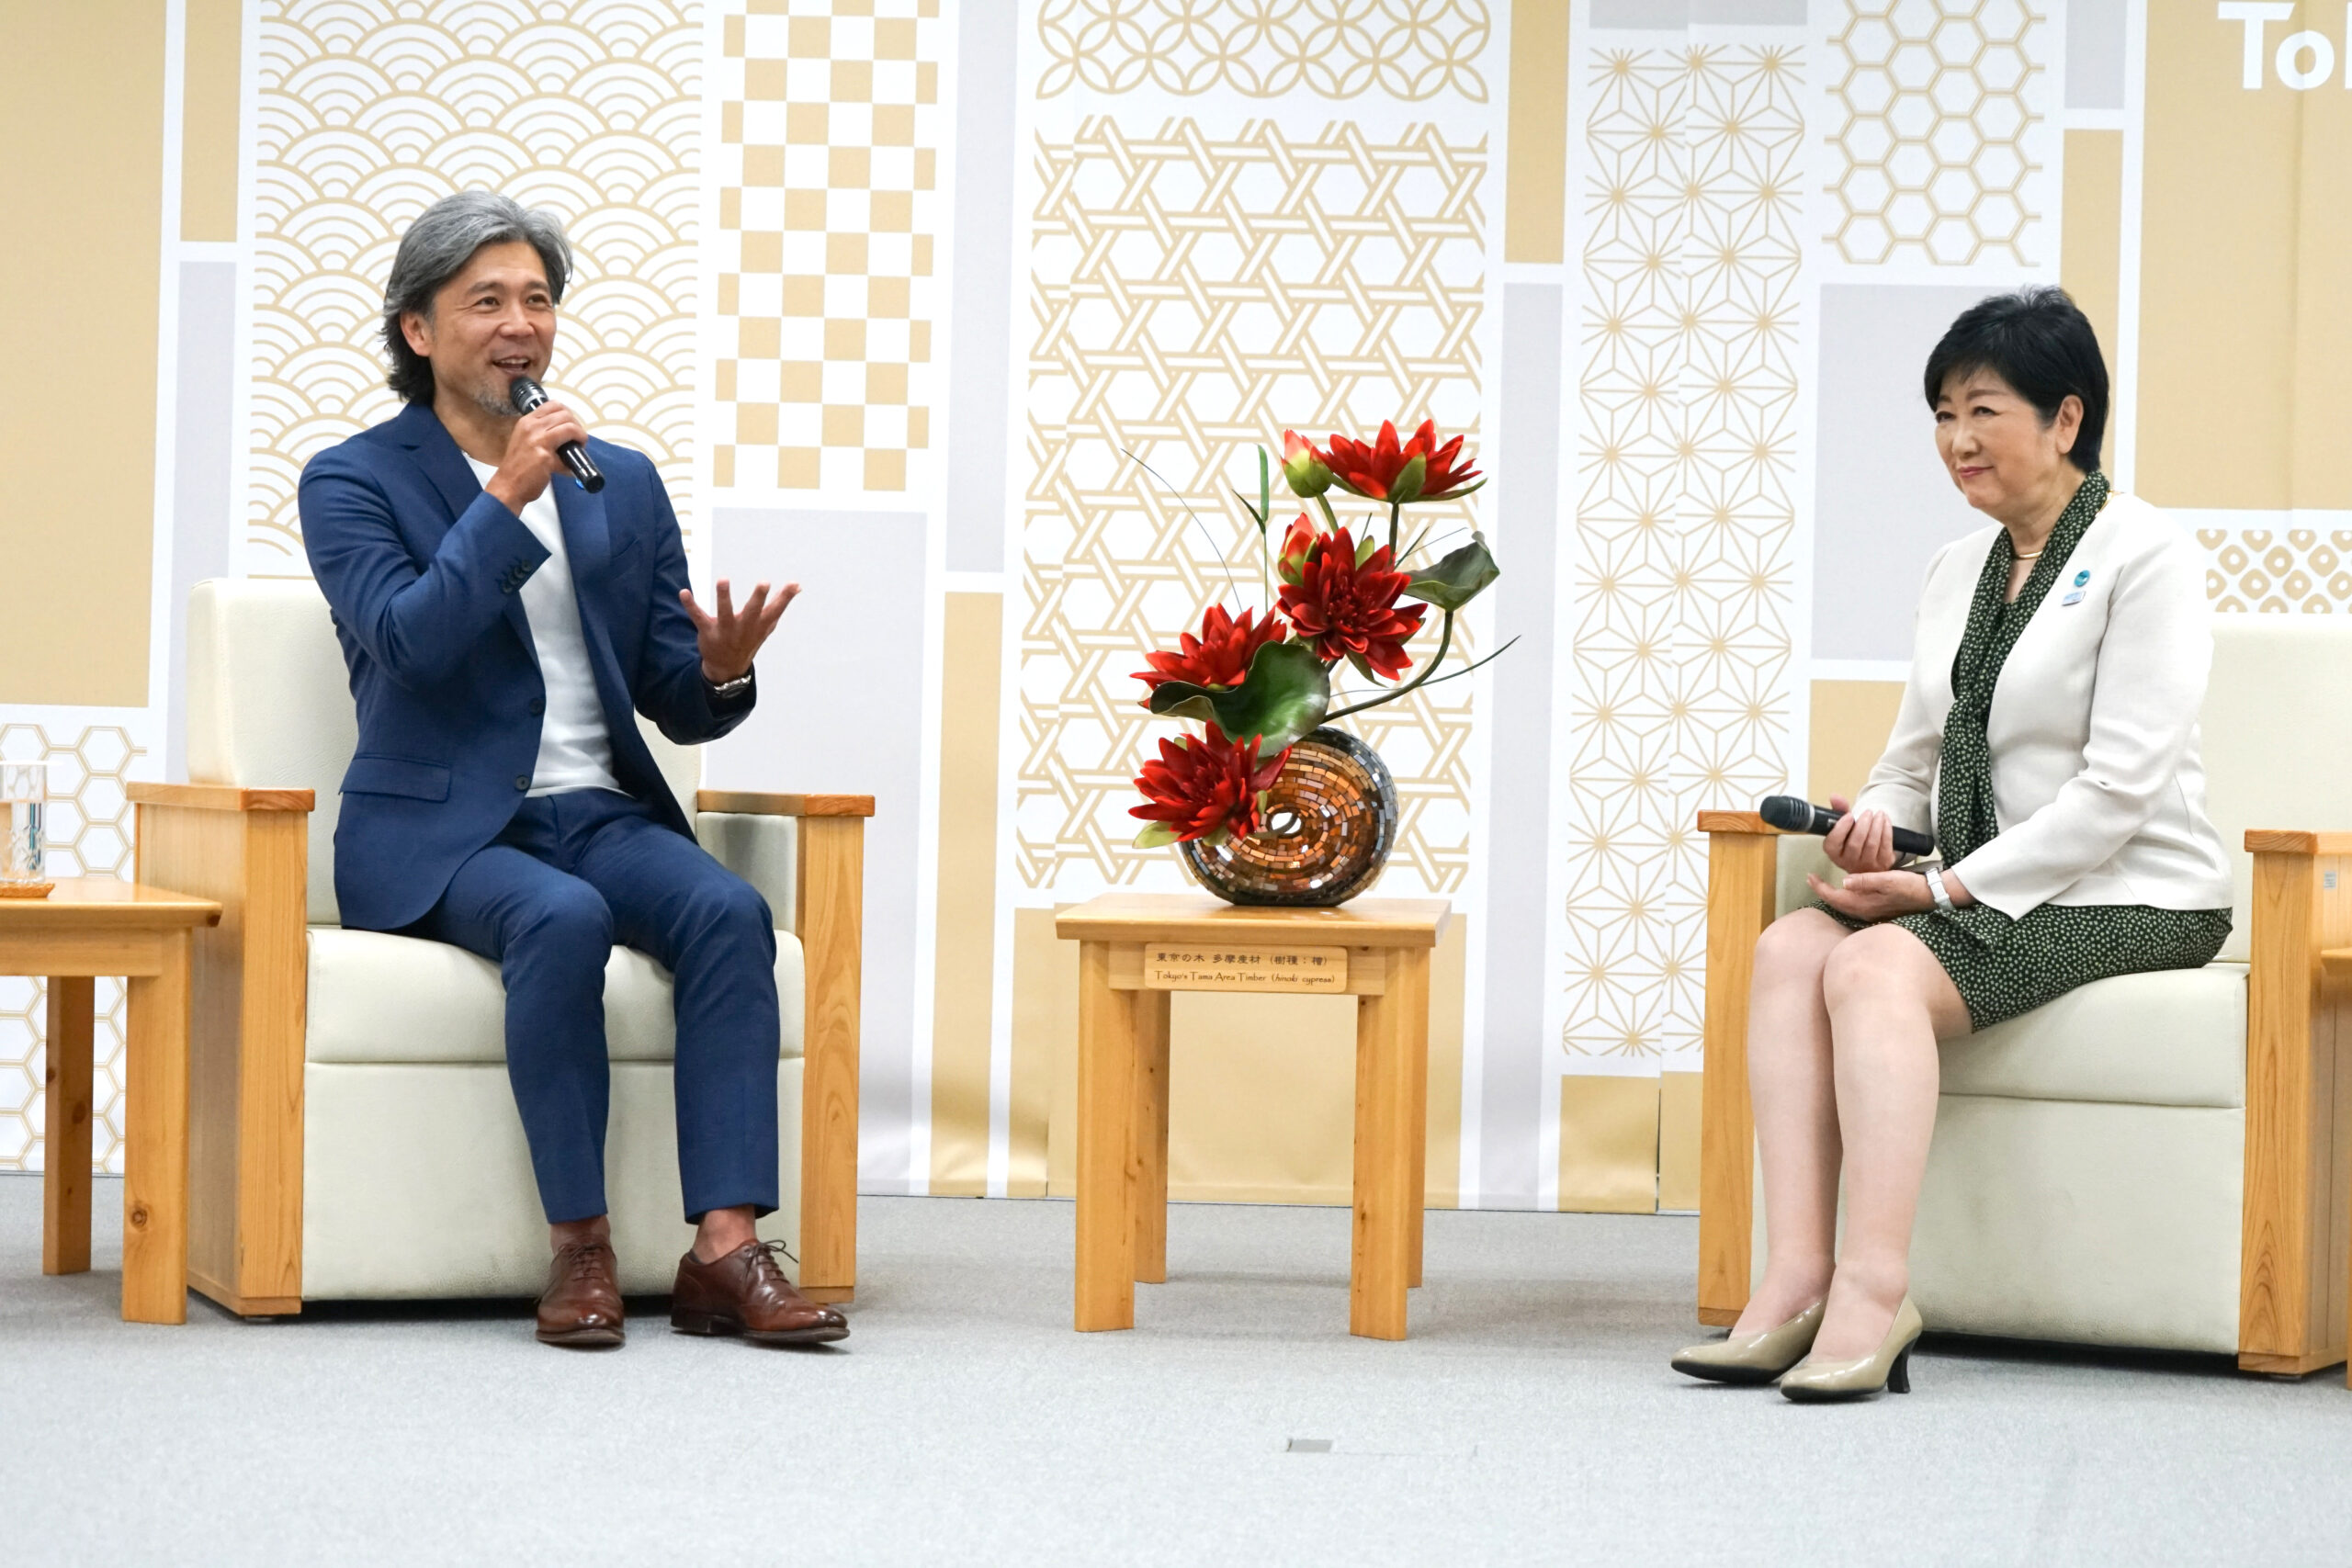 【動画あり】東京観光大使・熊川哲也氏が小池百合子知事を表敬訪問「僕はバレエ芸術で、“かっこいい東京”を世界に見せていく」